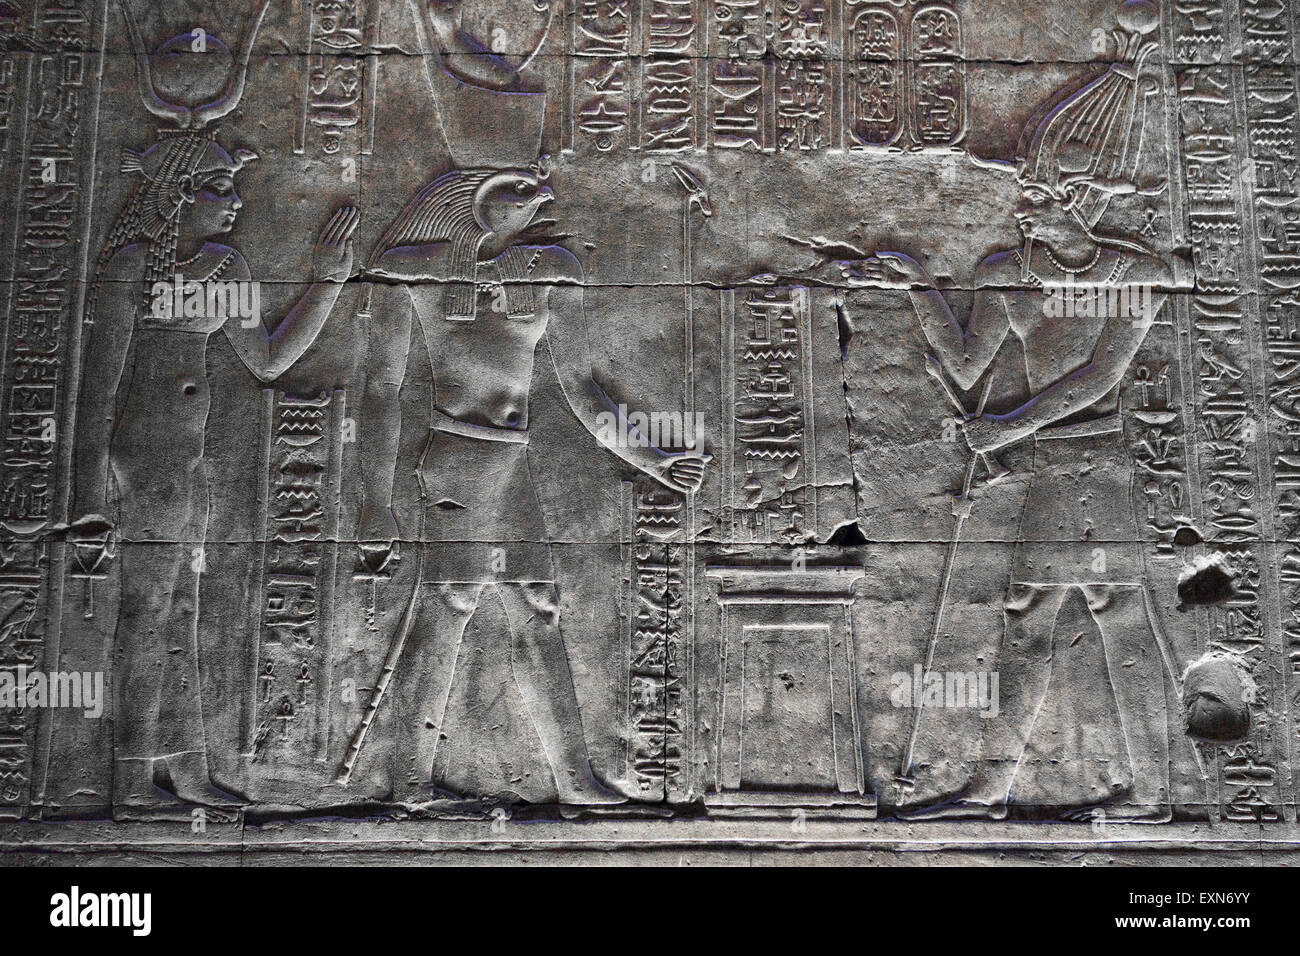 Sculture Antiche sulle pareti trovato presso il tempio di Idfu in Egitto. Foto Stock